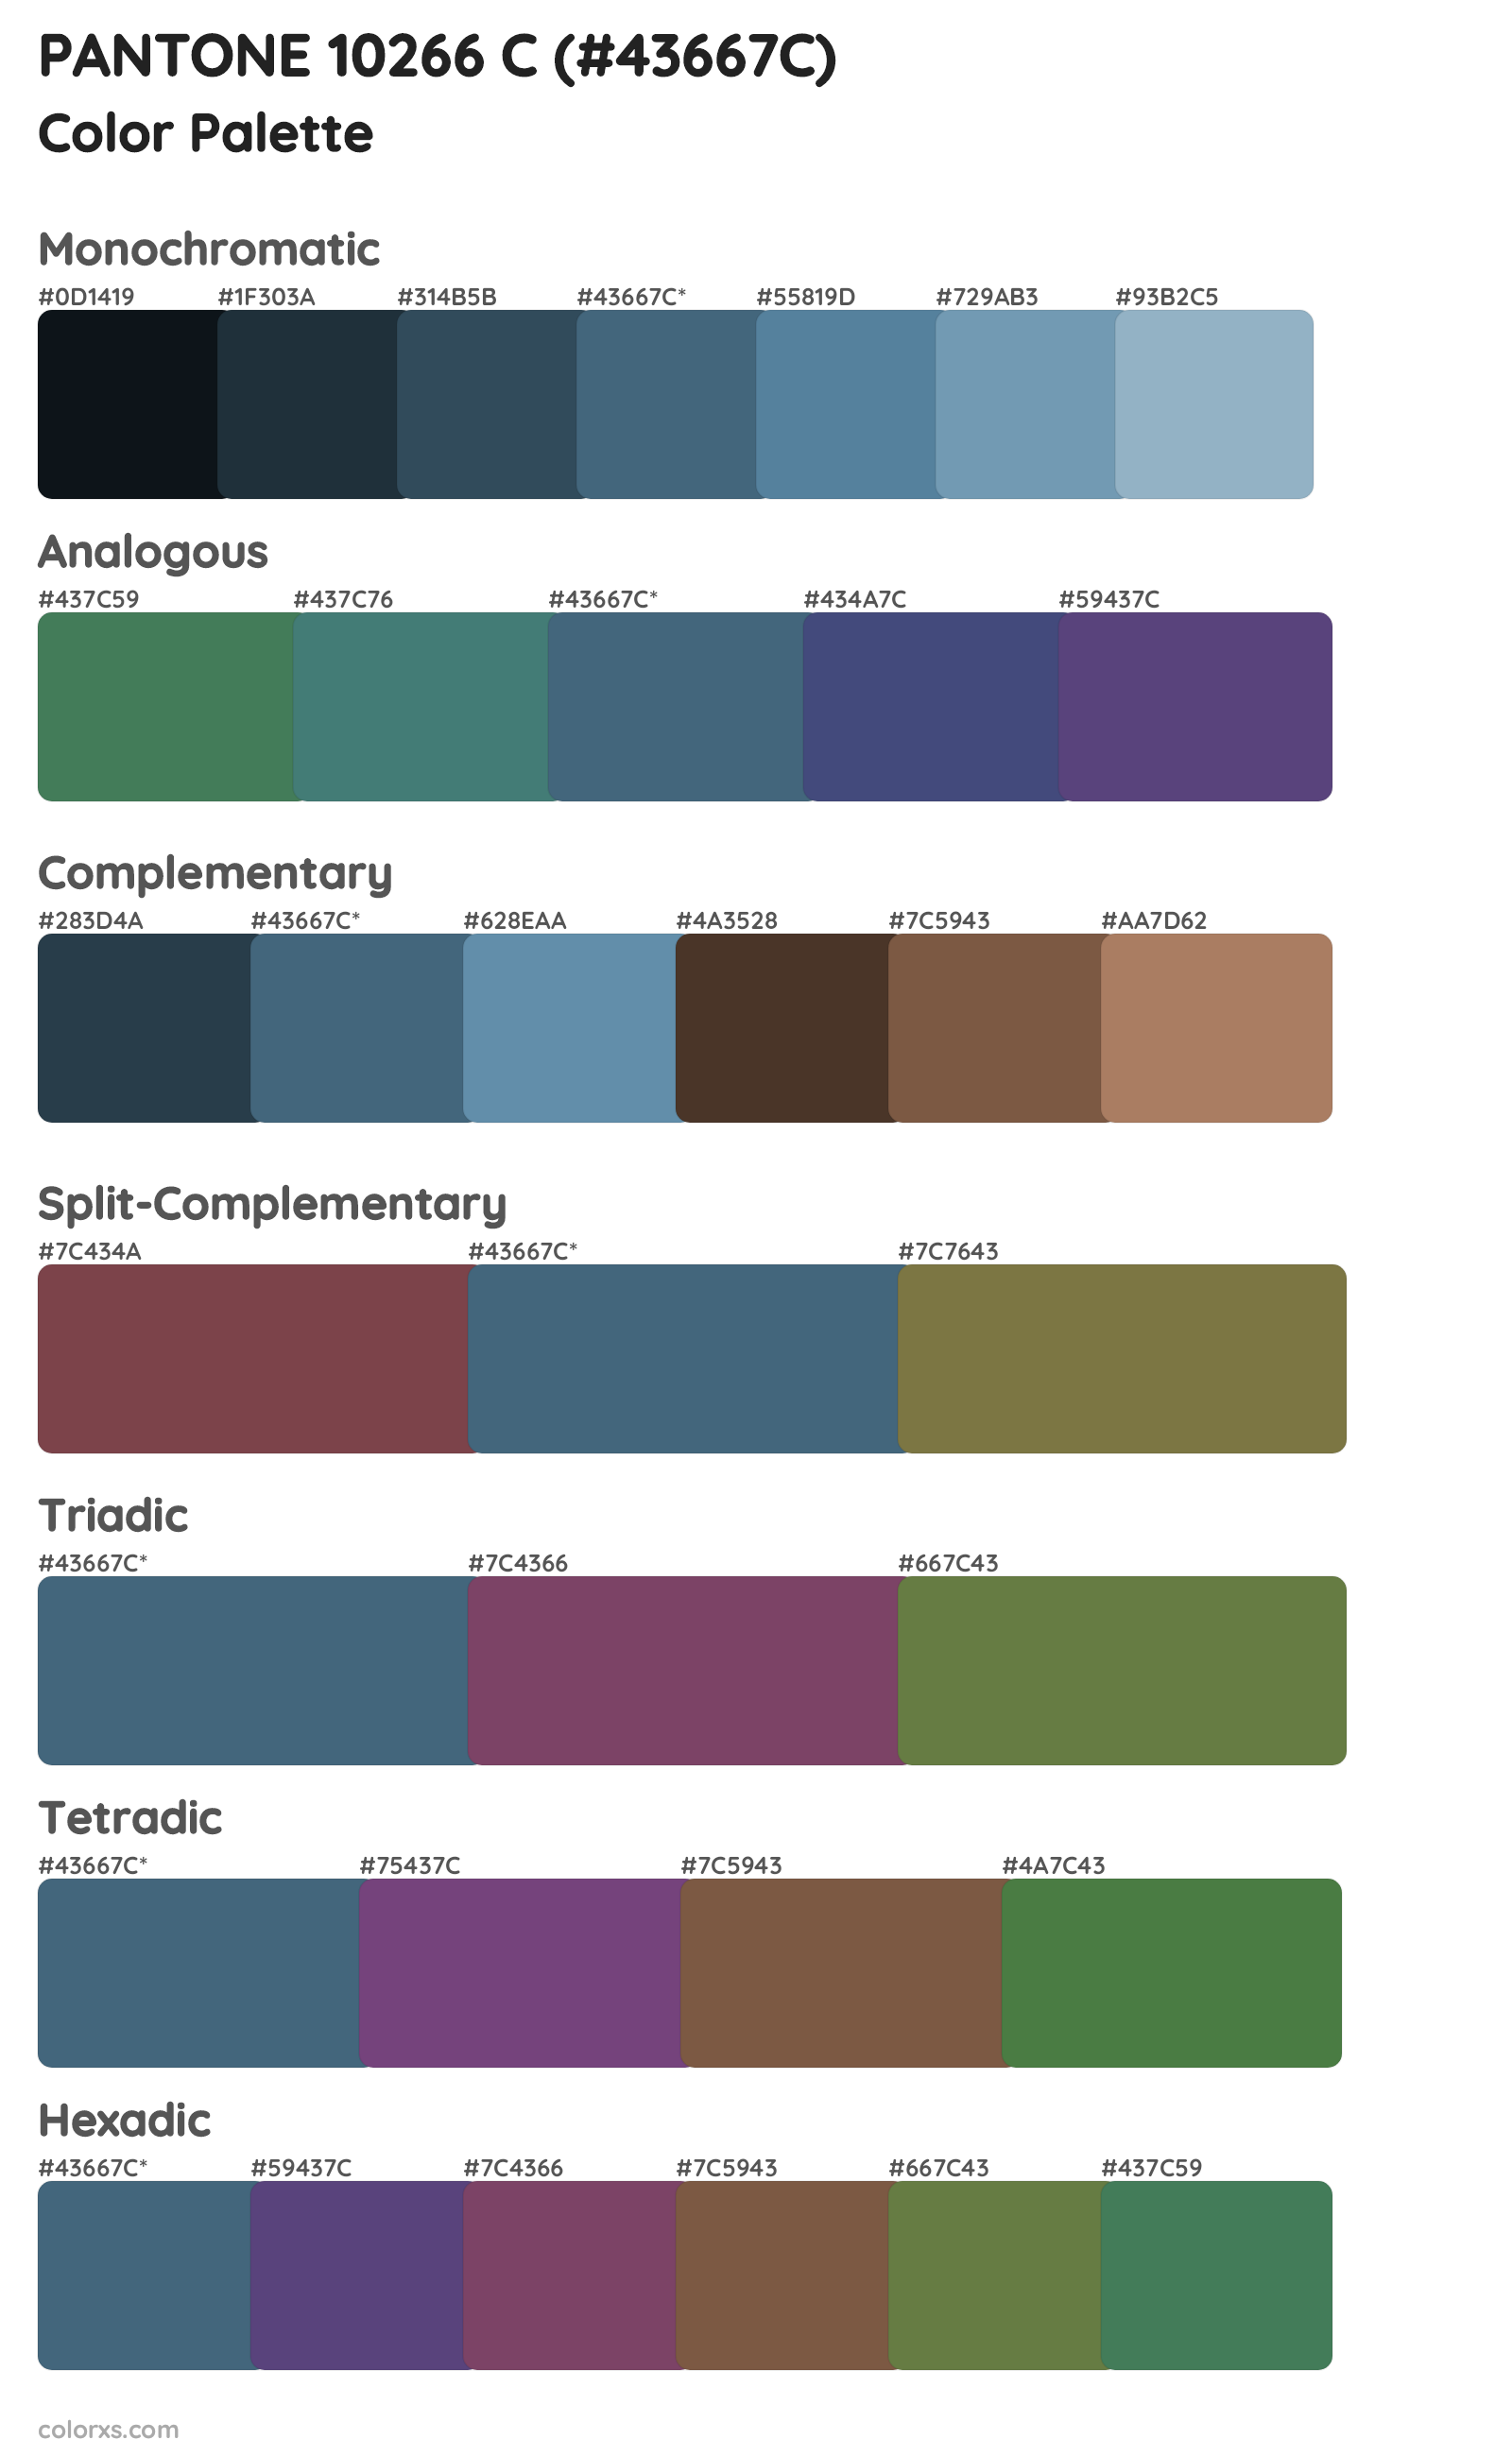 PANTONE 10266 C Color Scheme Palettes